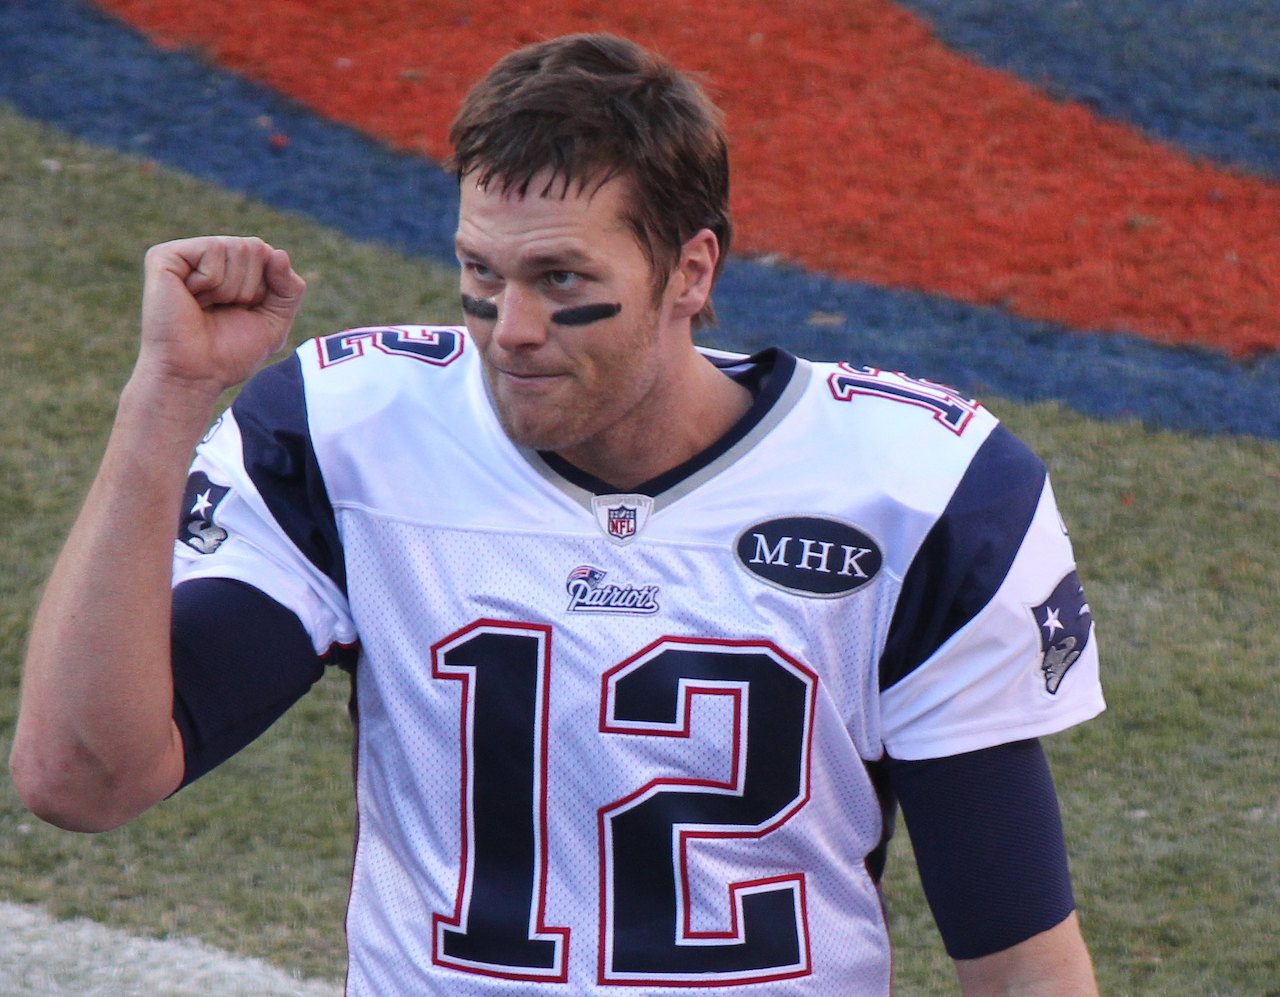 Tiga Prediksi Untuk Karier Penyiaran Tom Brady